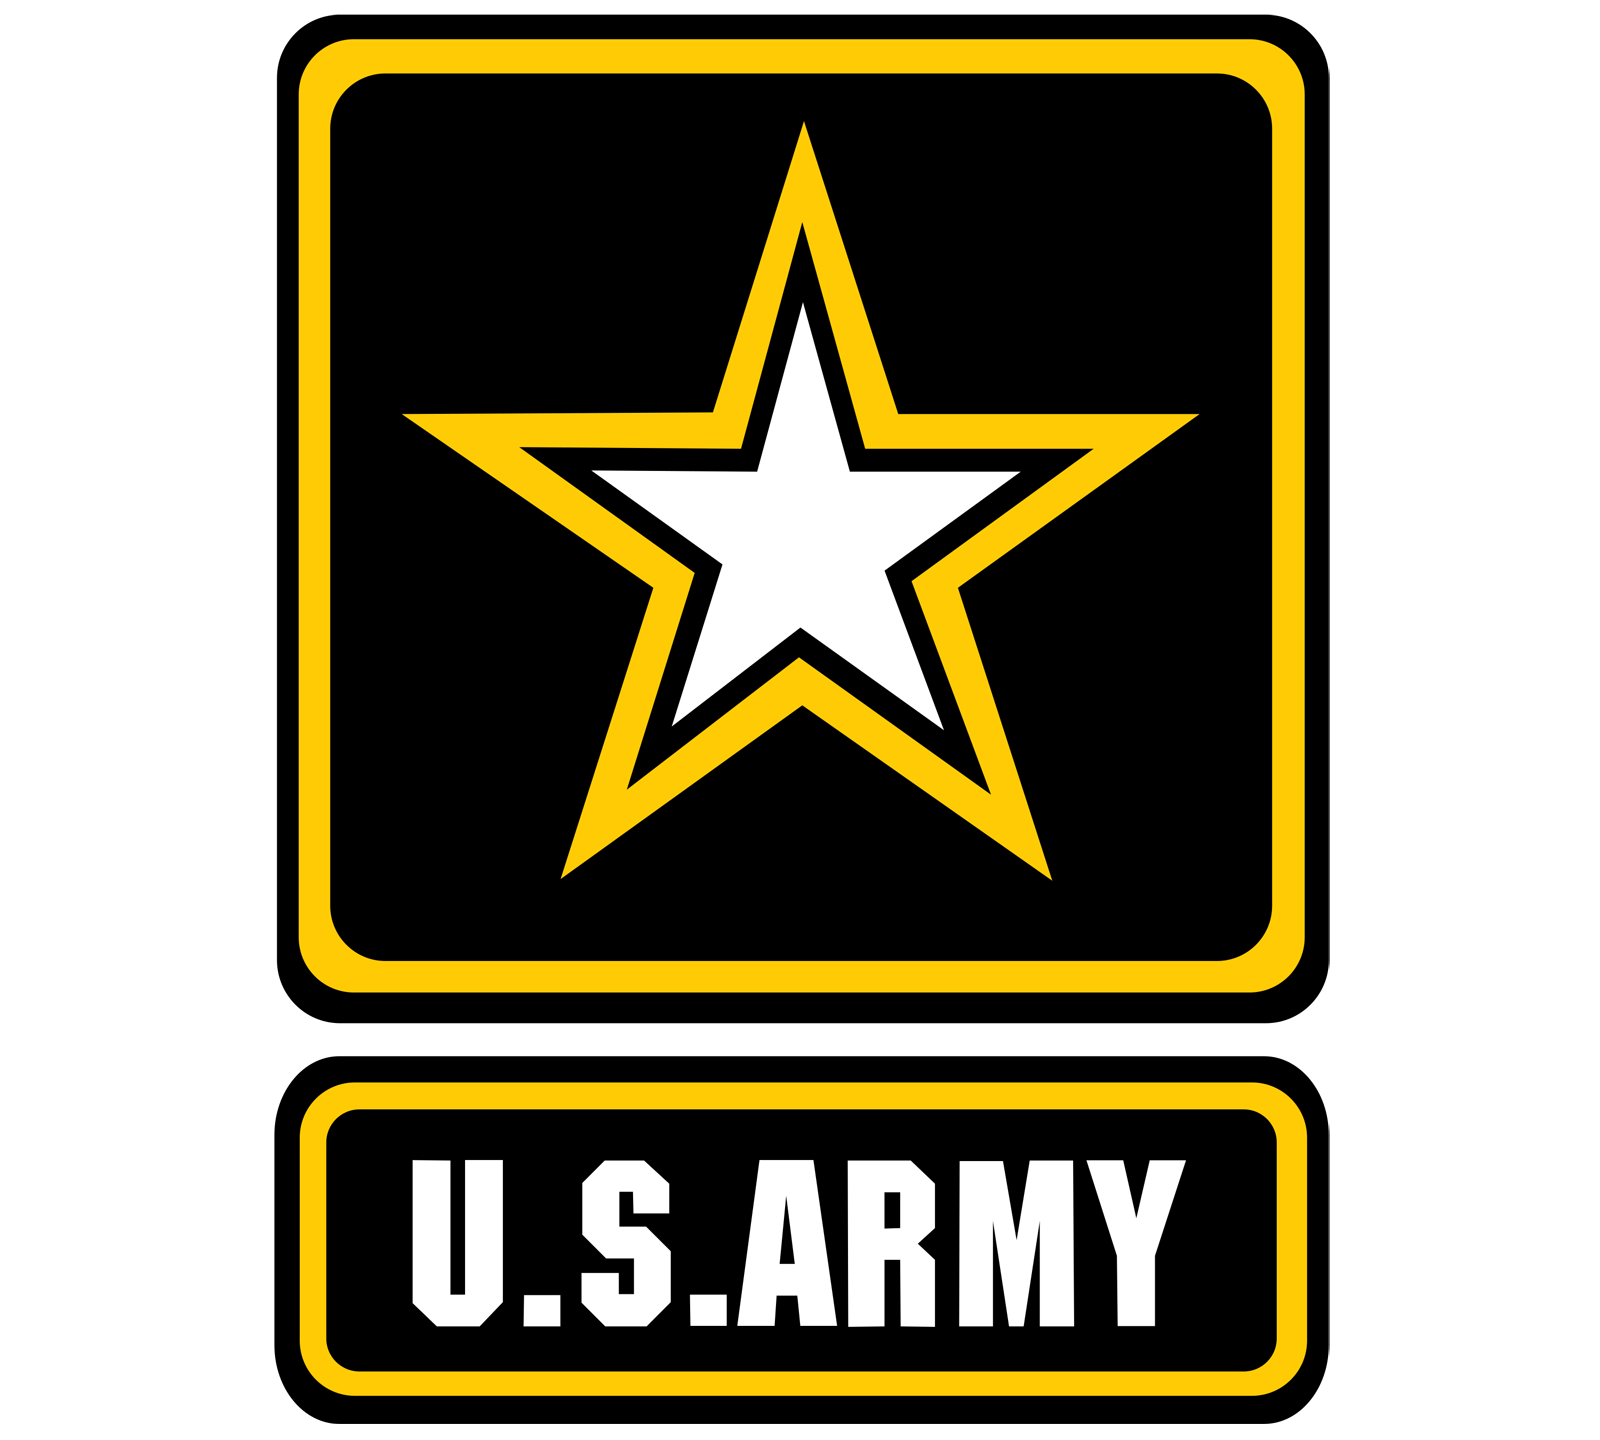 U.S. Army logo.